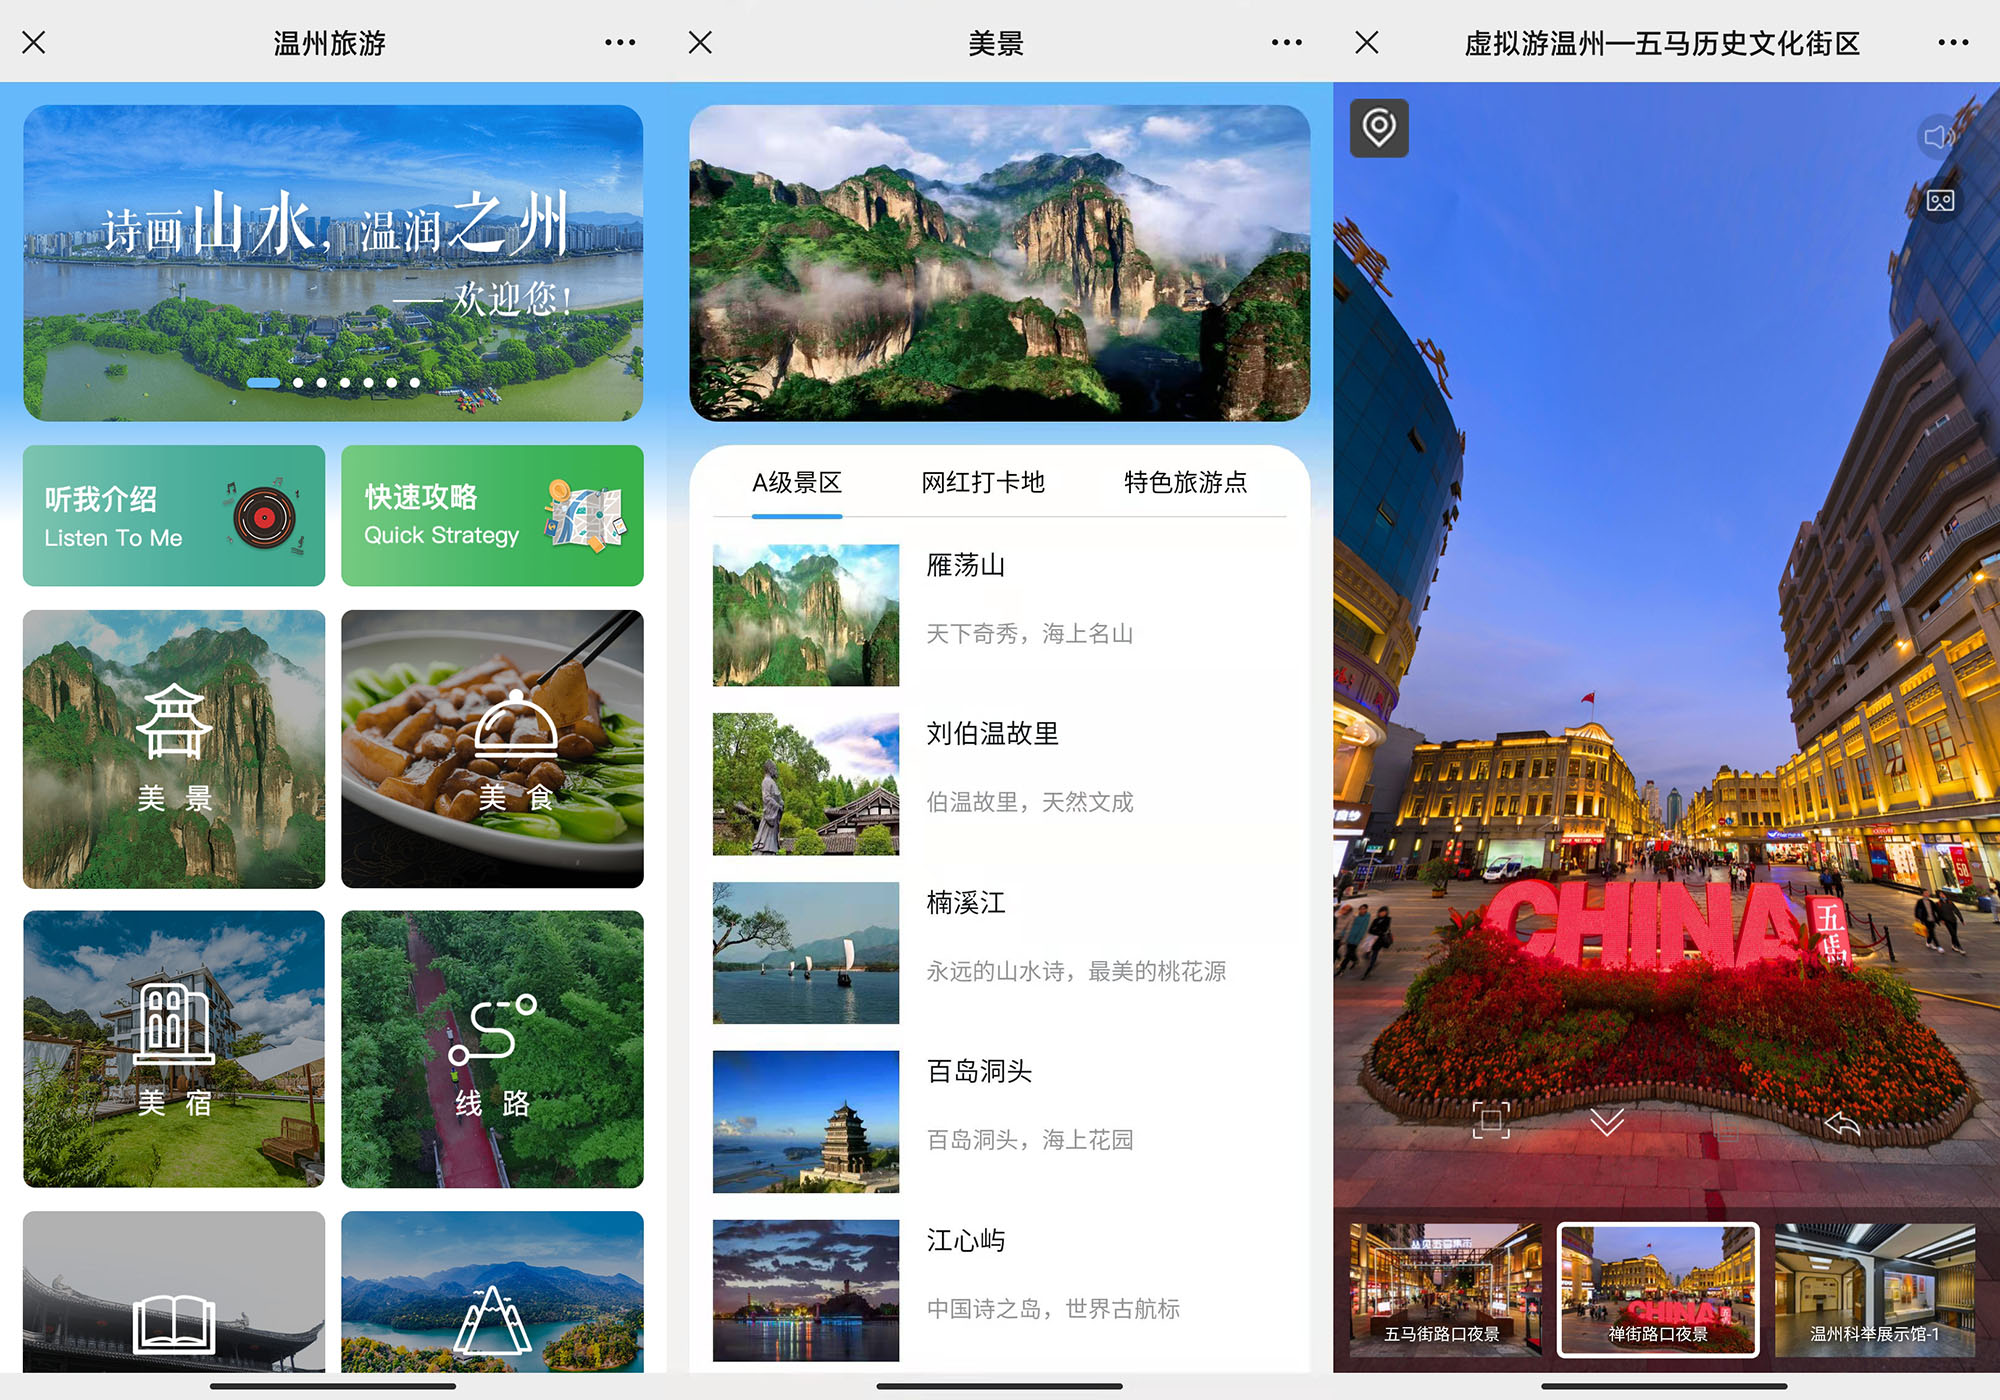 山东青岛文旅公共服务平台“品游青岛”正式上线